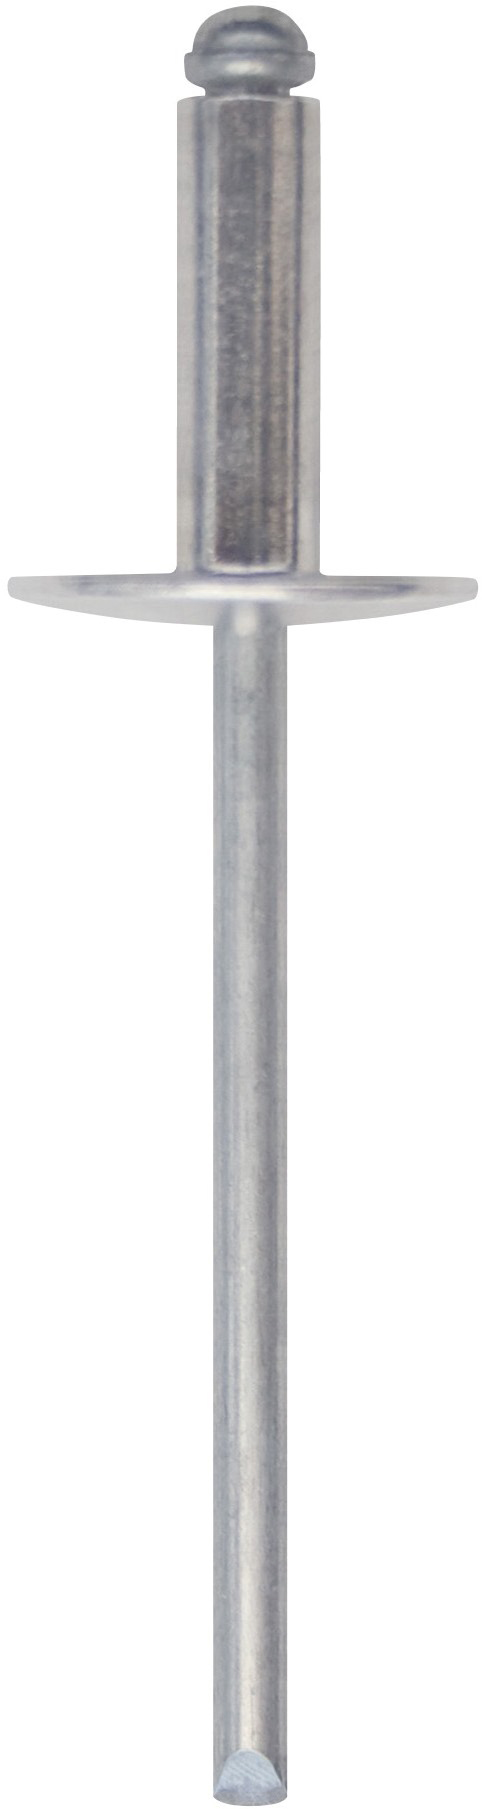 Cod. 0300104802500 - RIVEX Rivetto in alluminio con testa larga